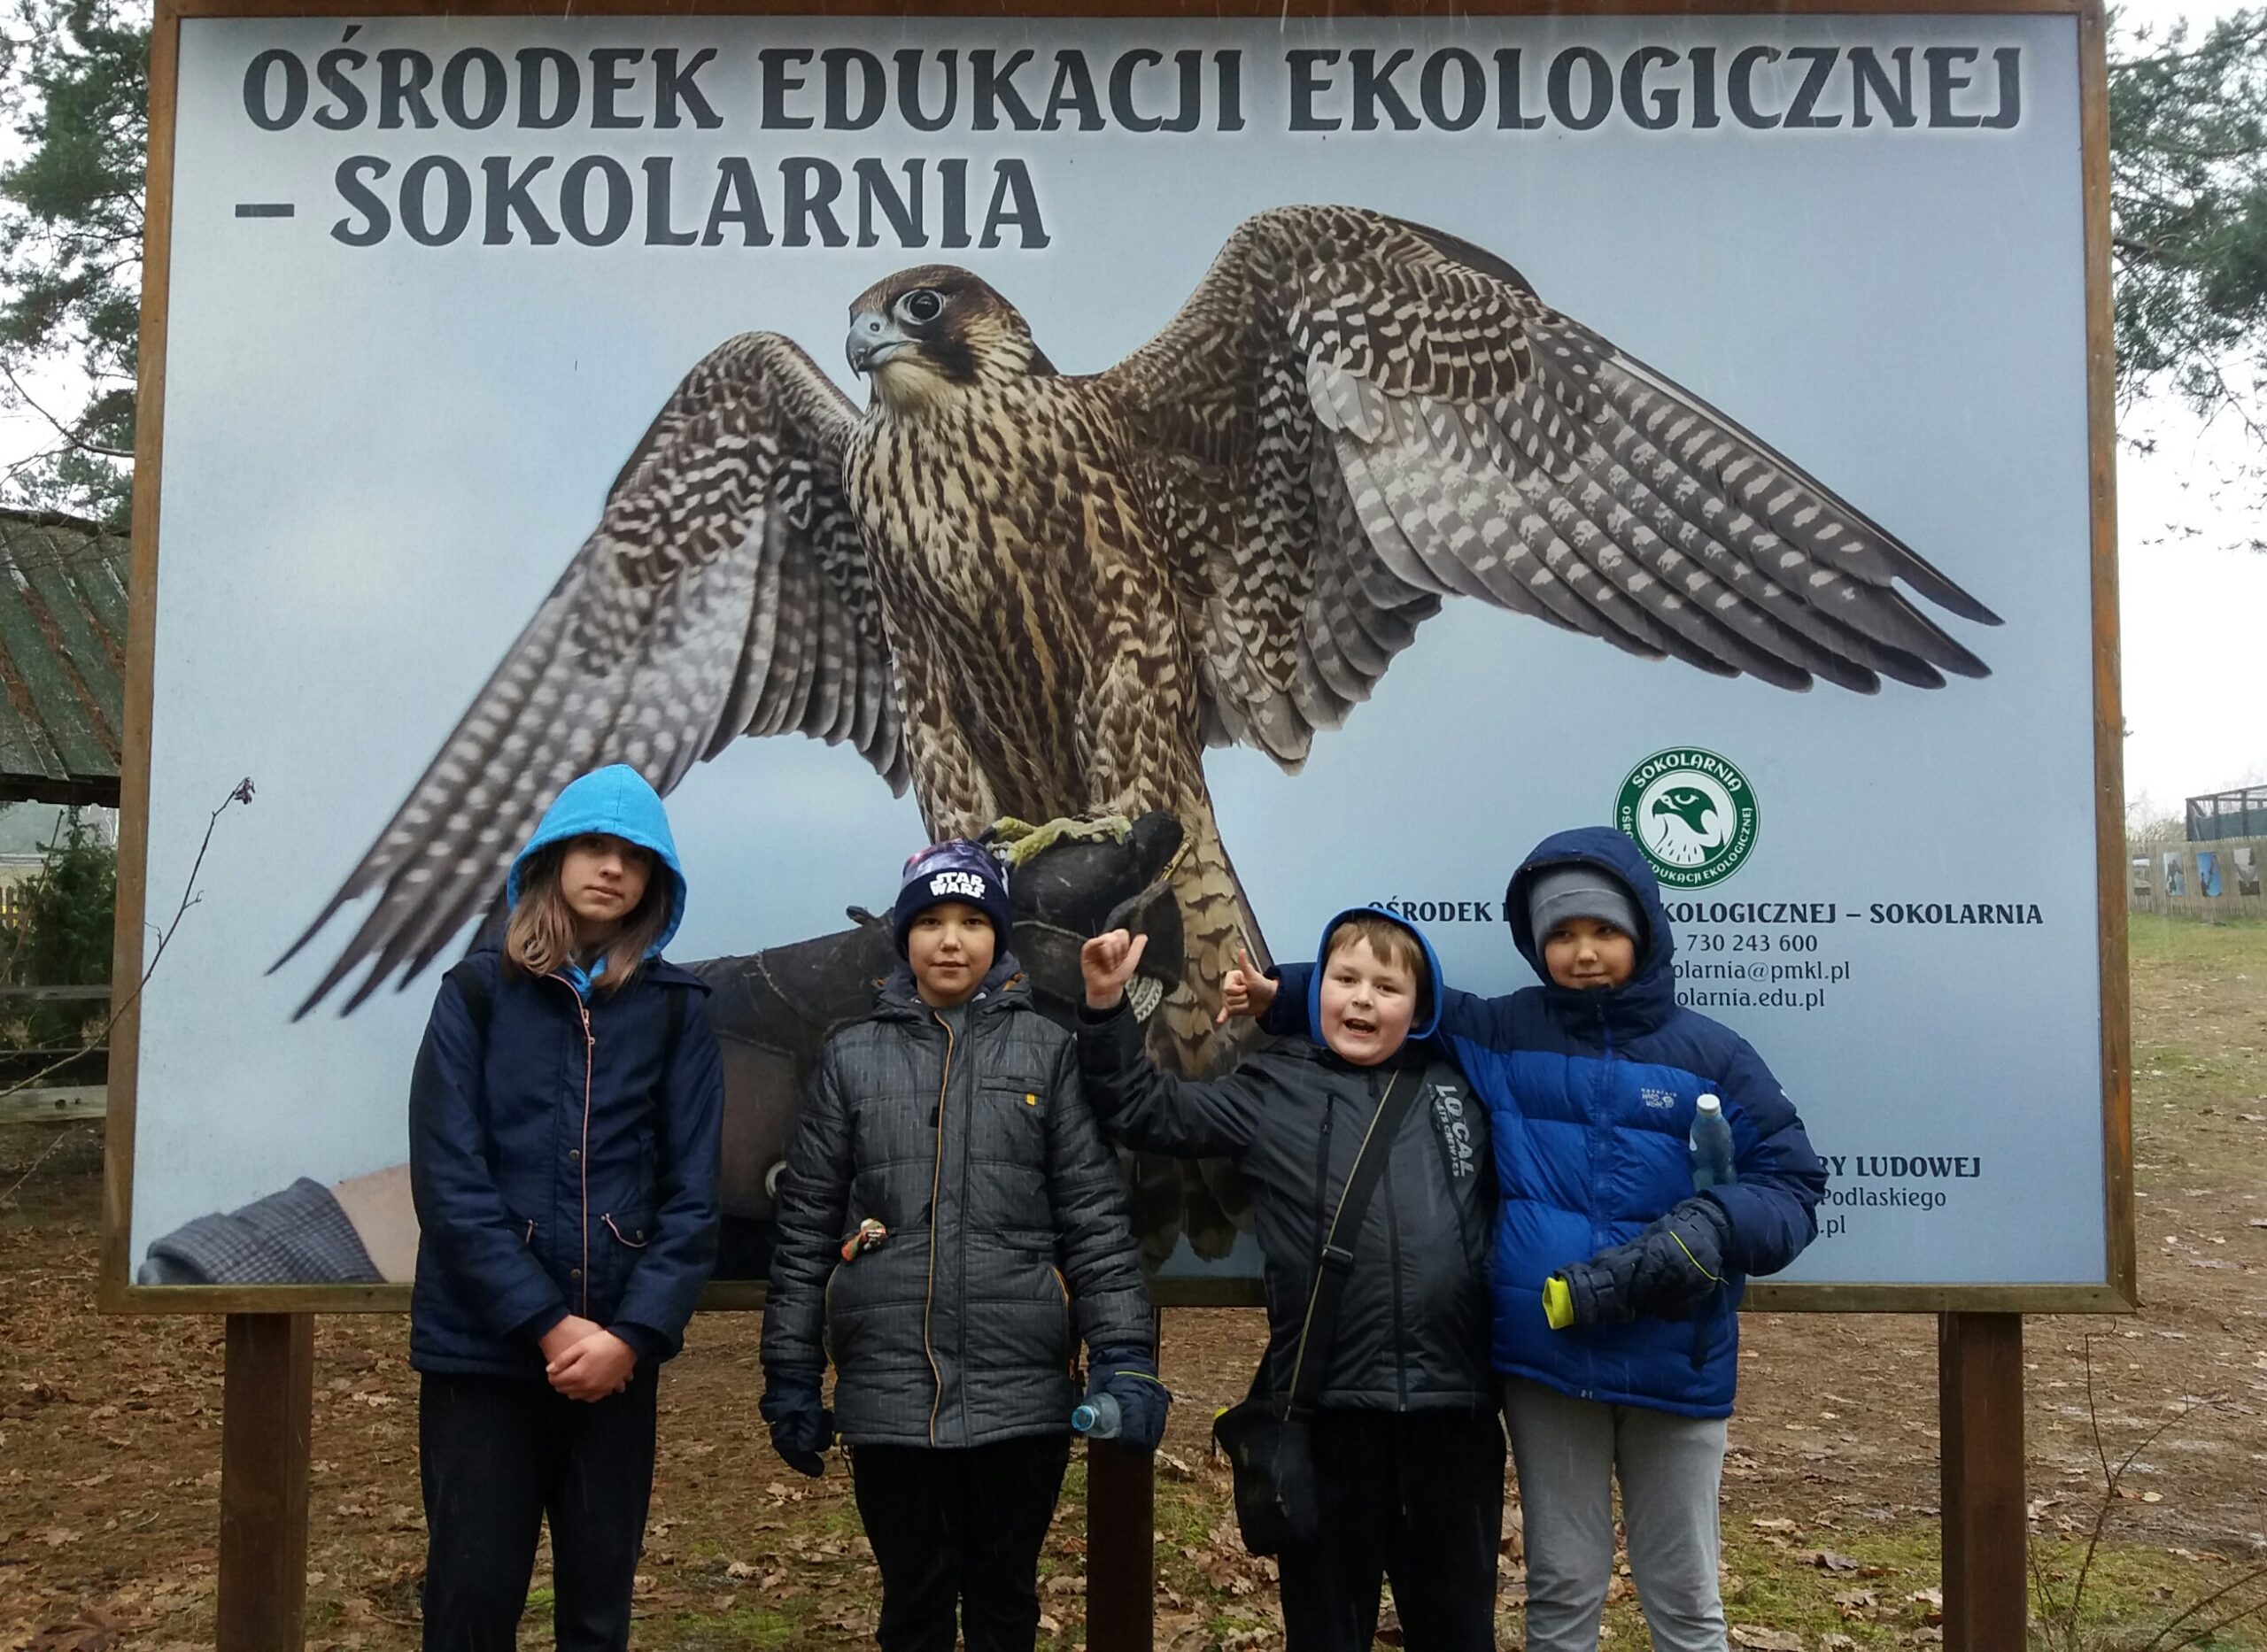 Czworo dzieci na tle baneru Ośrodka Edukacji Ekologicznej - Sokolarnia